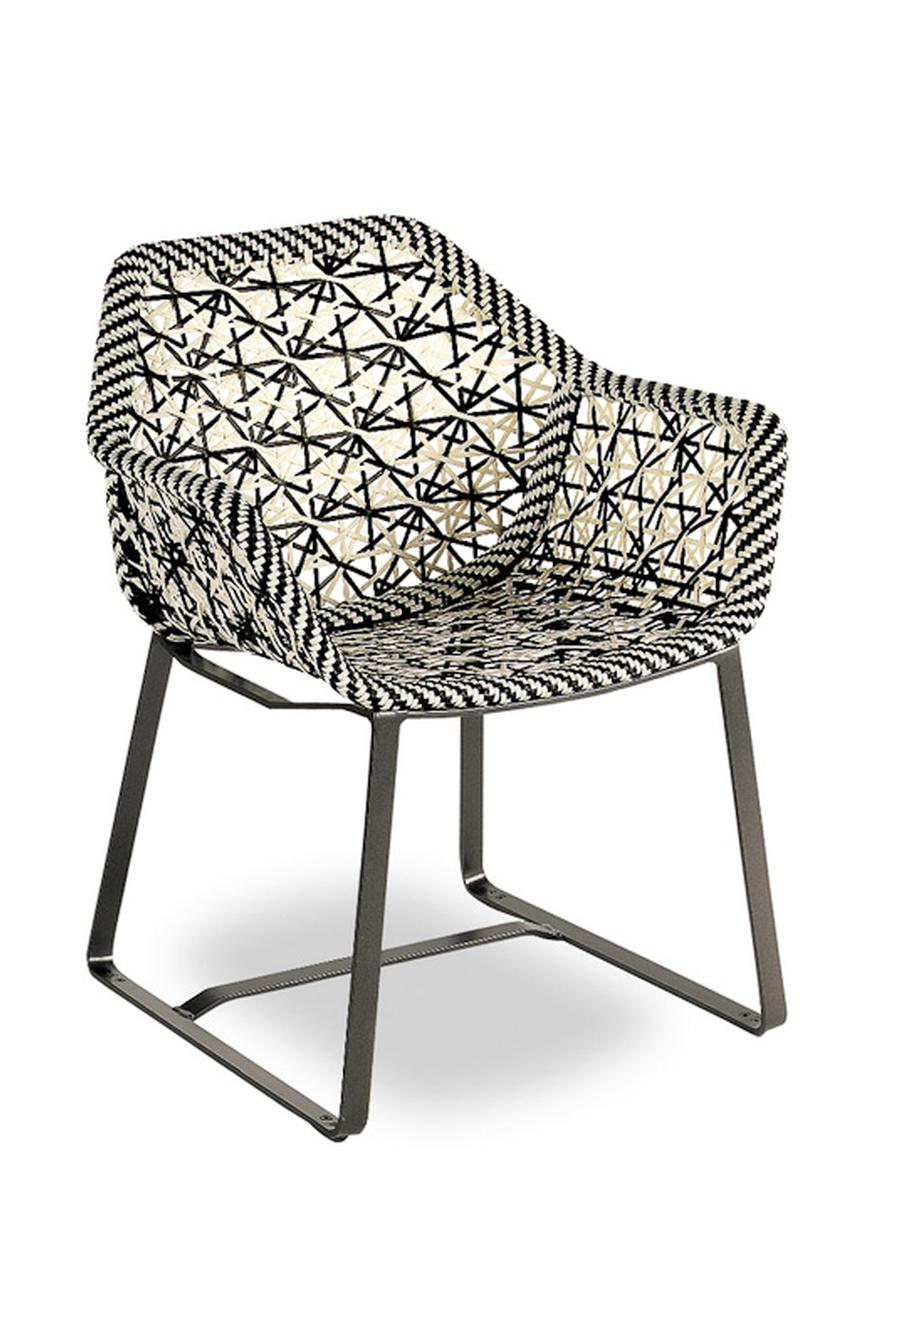 Bild: Stuhl aus der Maia Kollektion von Kettal